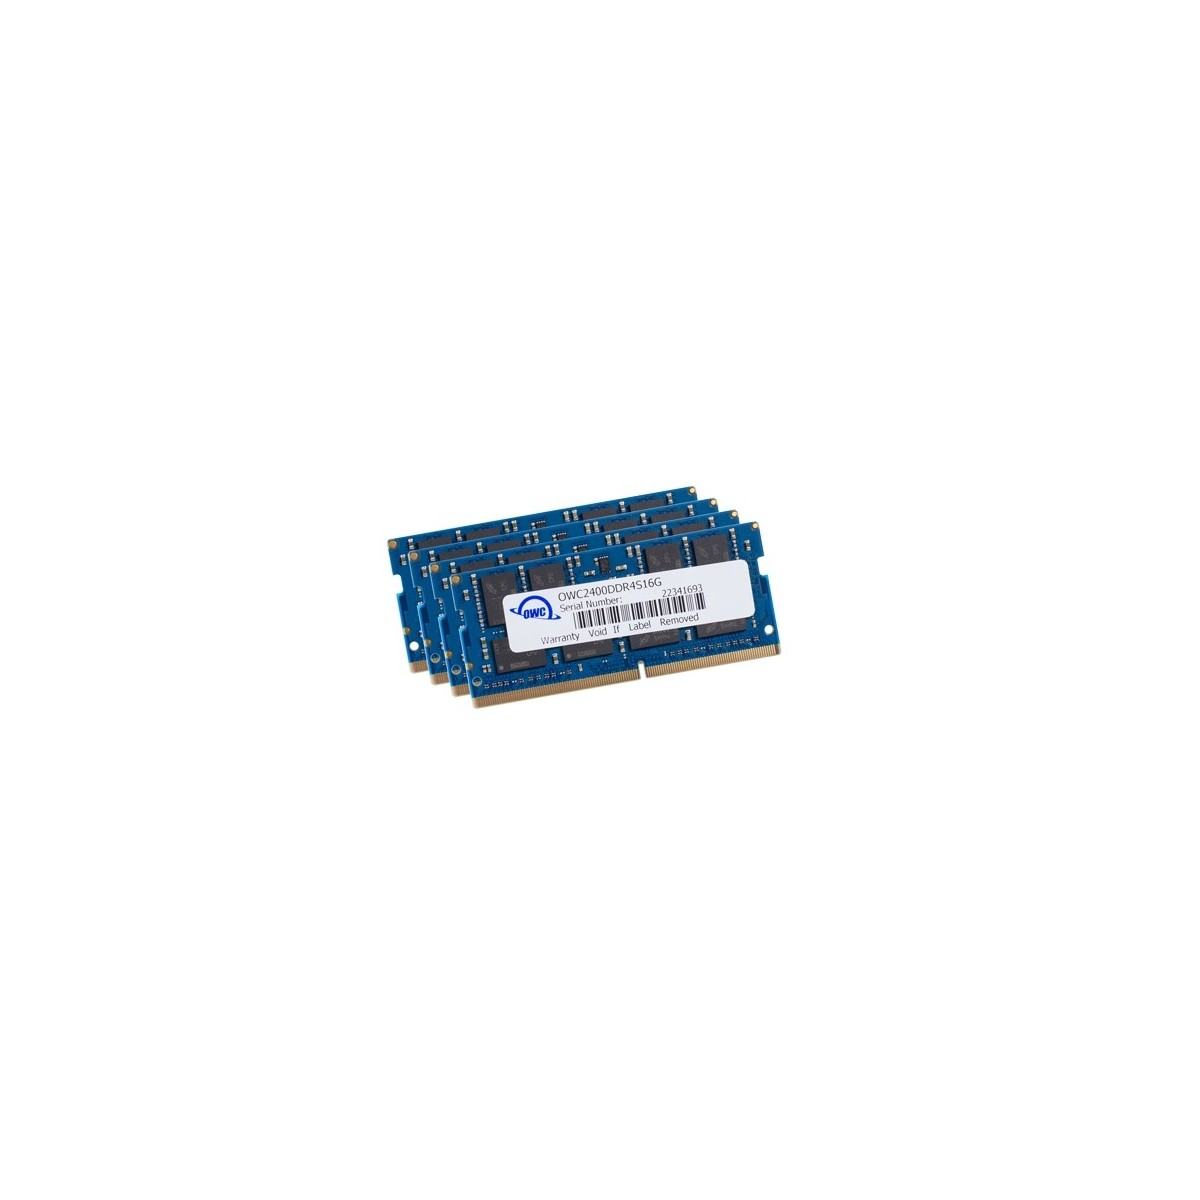 OWC OWC2400DDR4S64S - 64 GB - 4 x 16 GB - DDR4 - 2400 MHz - 260-pin SO-DIMM